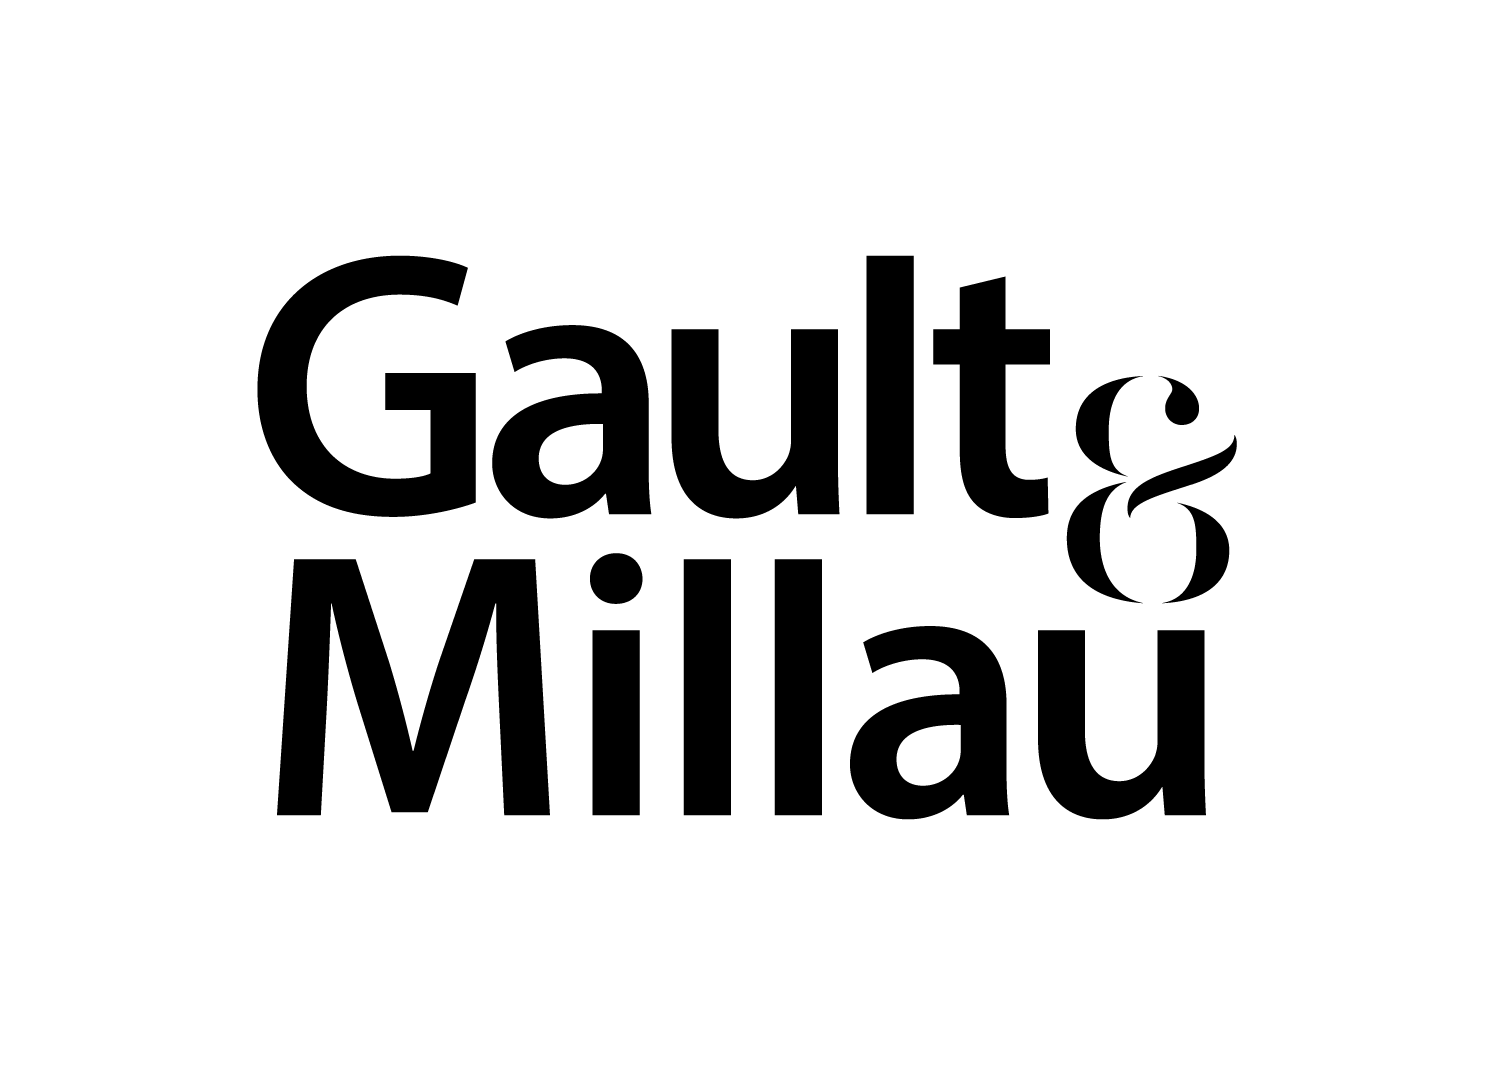 Gault&Millau Logo